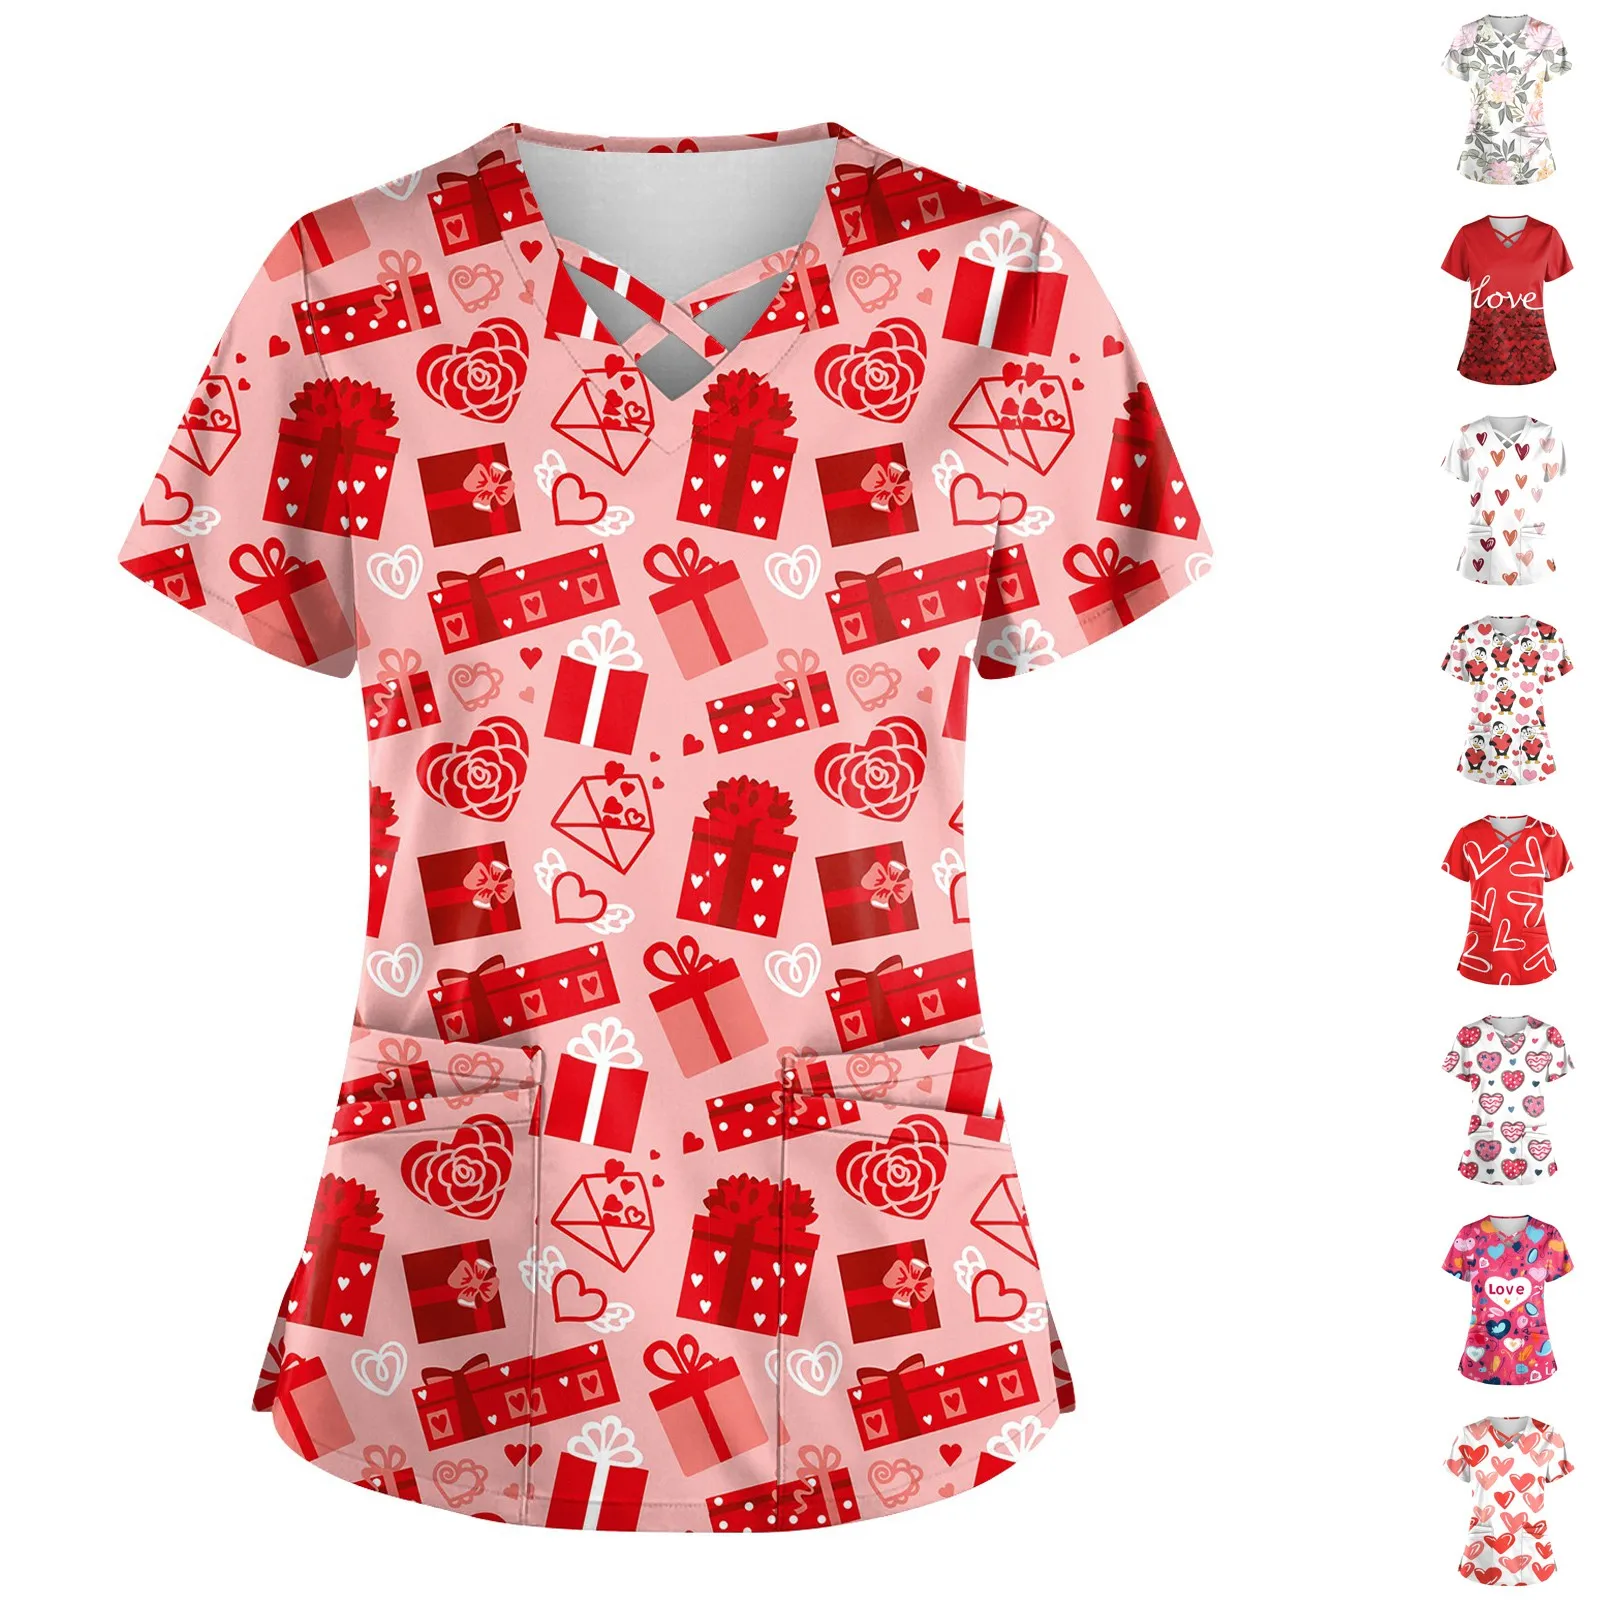 

Женская рабочая форма с принтом на День святого Валентина, защитная Рабочая форма с V-образным вырезом и карманами, уникальные удобные женские рубашки